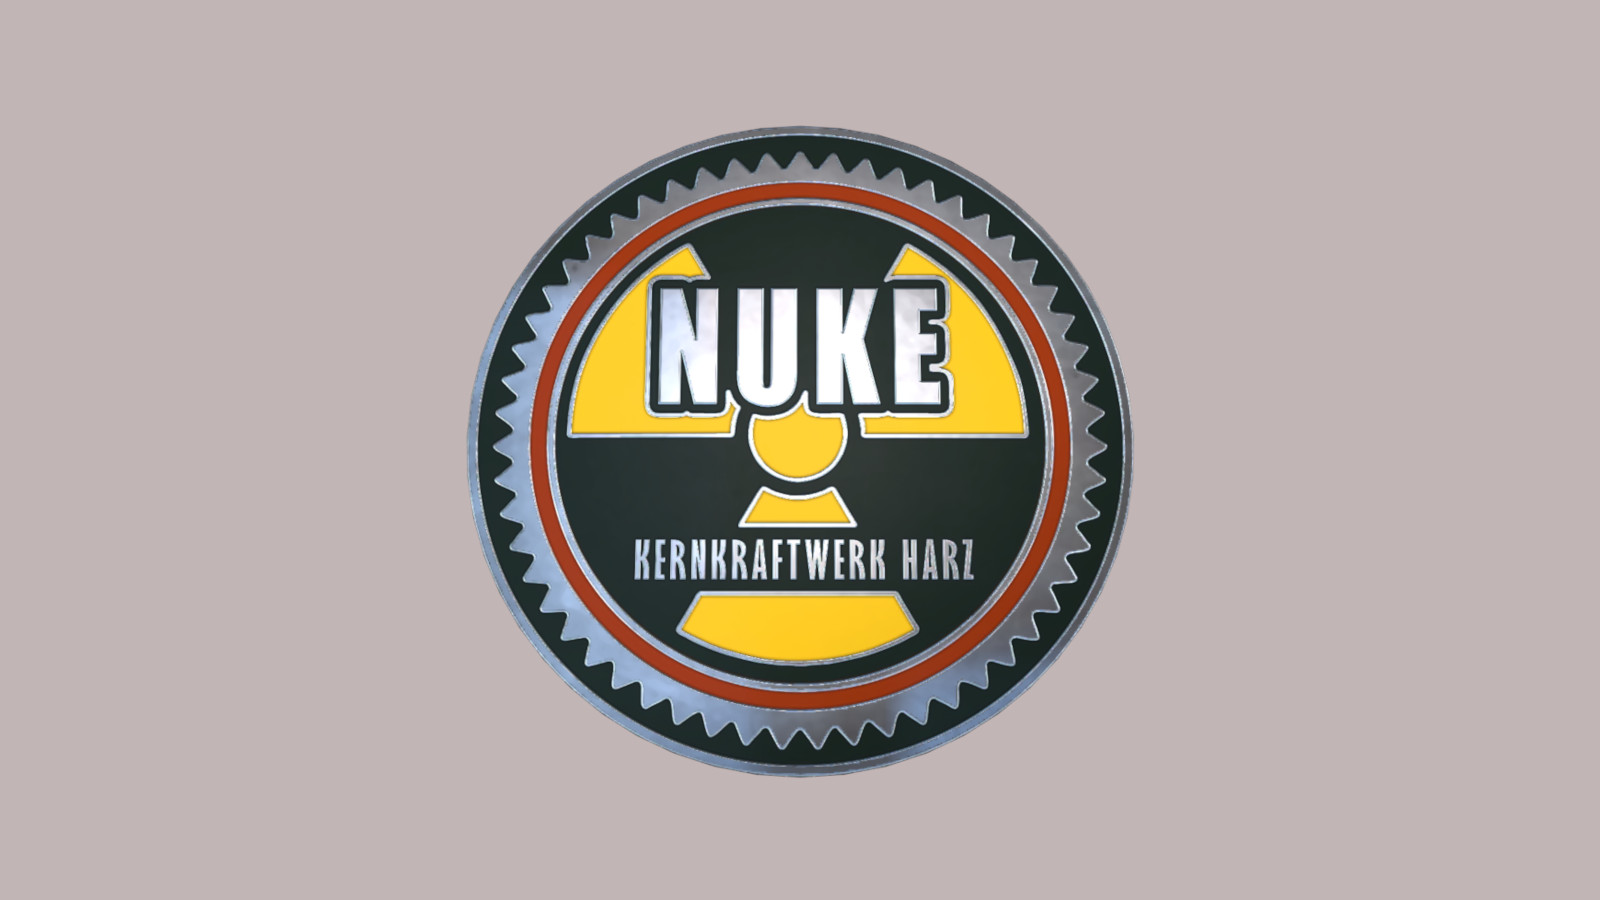 CS:GO - Series 1 - Nuke Collectible Pin